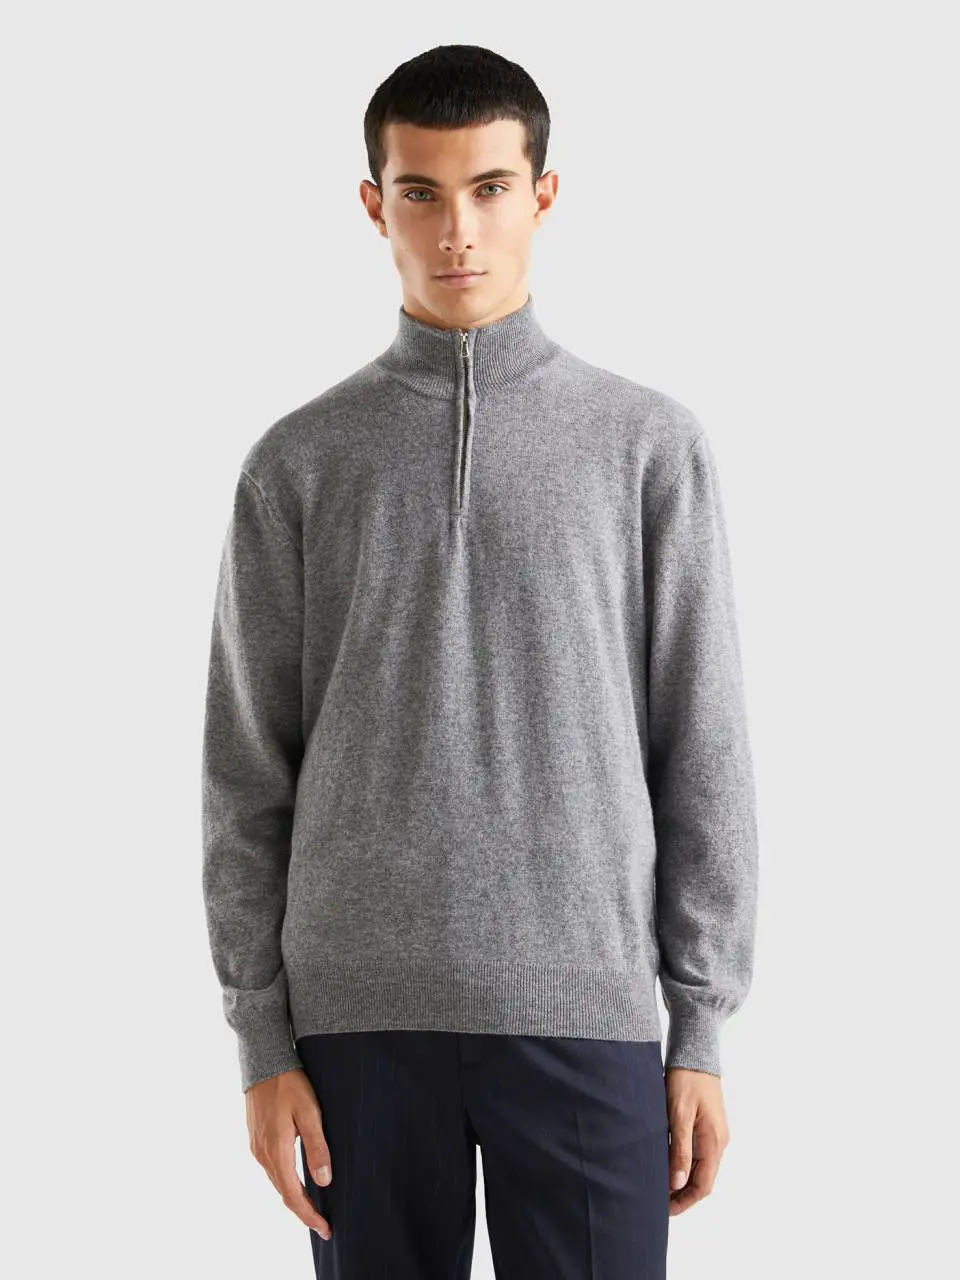 Benetton gray zip-up sweater in 100% wool. 1